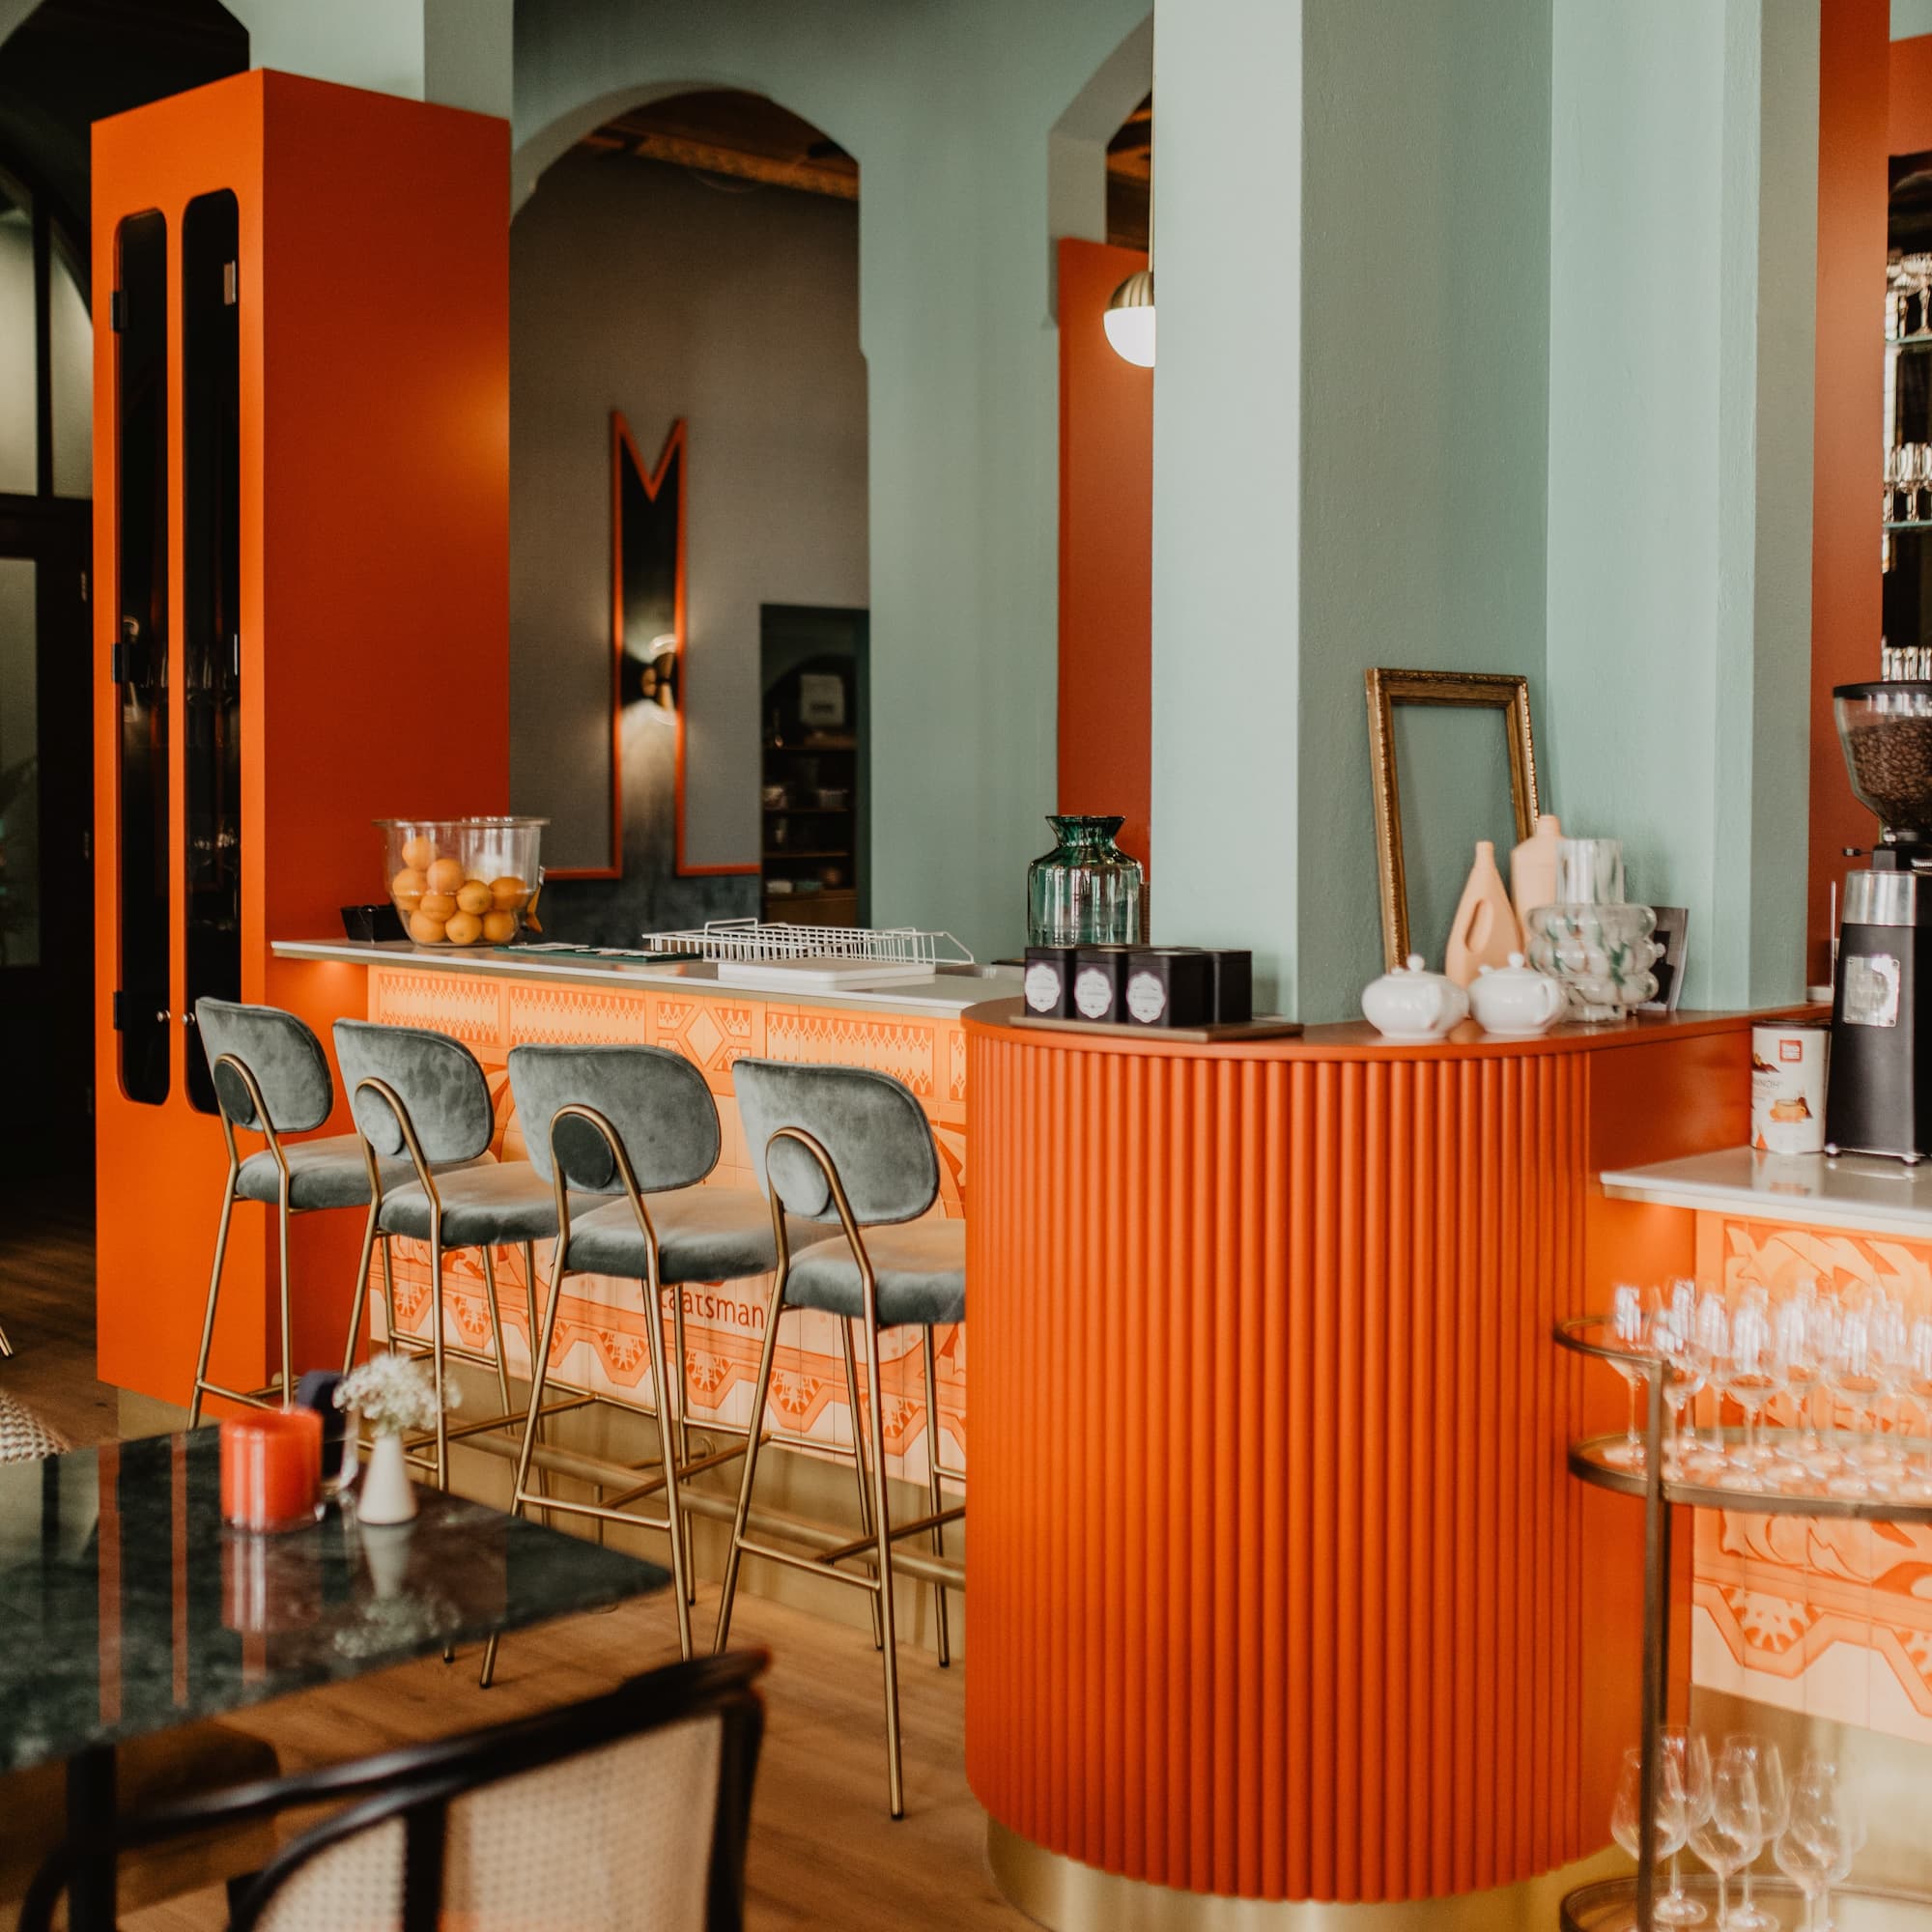 Weergave van het bar-gedeelte binnen in het restaurant 'Grand Café Staatsman' in Zwolle